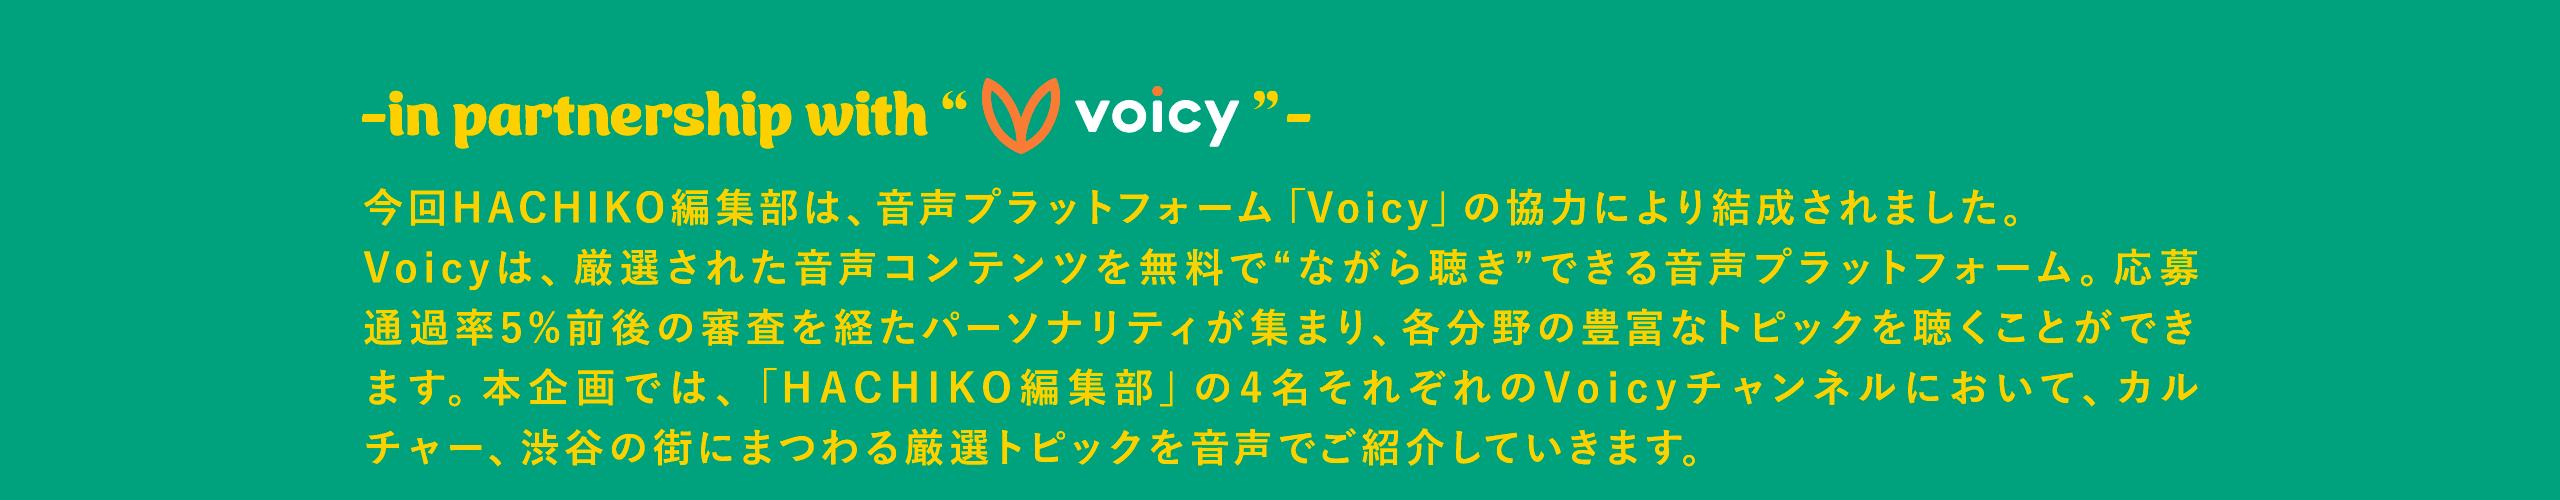 in partnership with voicy 今回HACHIKO編集部は、音声プラットフォーム「Voicy」の協力により結成されました。 Voicyは、厳選された音声コンテンツを無料で“ながら聴き”できる音声プラットフォーム。応募通過率5%前後の審査を経たパーソナリティが集まり、各分野の豊富なトピックを聴くことができます。本企画では、「HACHIKO編集部」の4名それぞれのVoicyチャンネルにおいて、カルチャー、渋谷の街にまつわる厳選トピックを音声でご紹介していきます。 